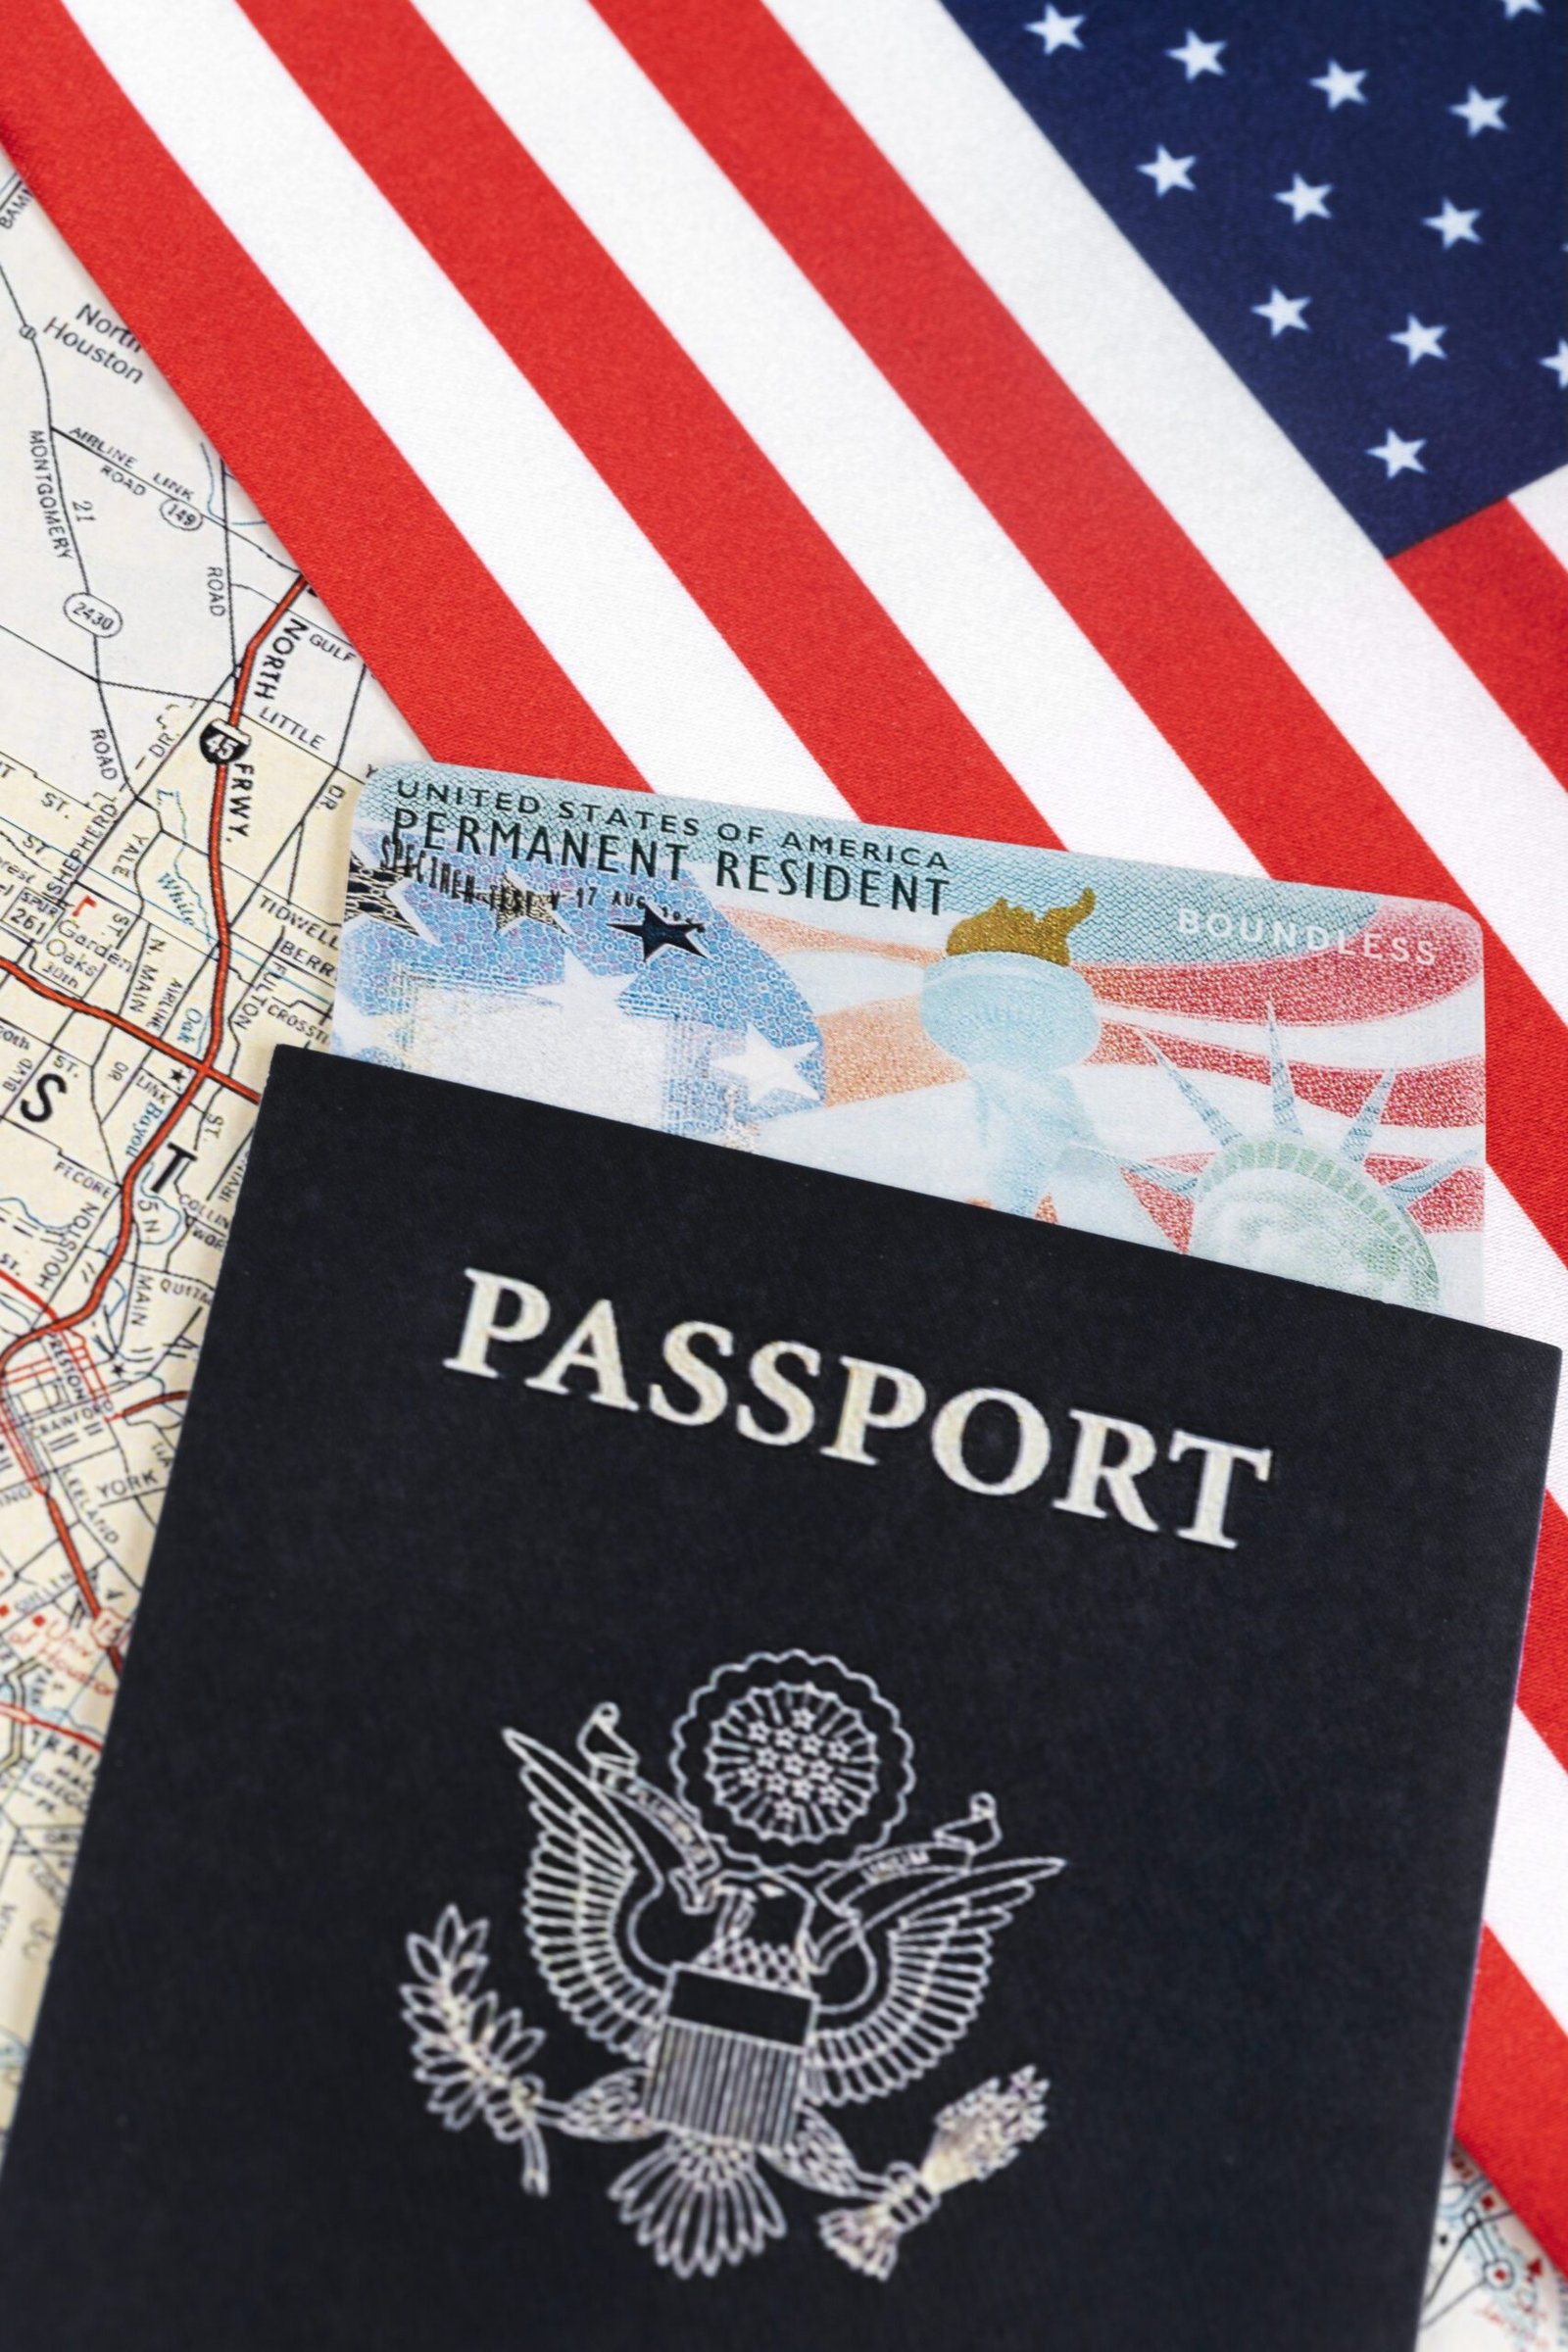 green-card-passport-view